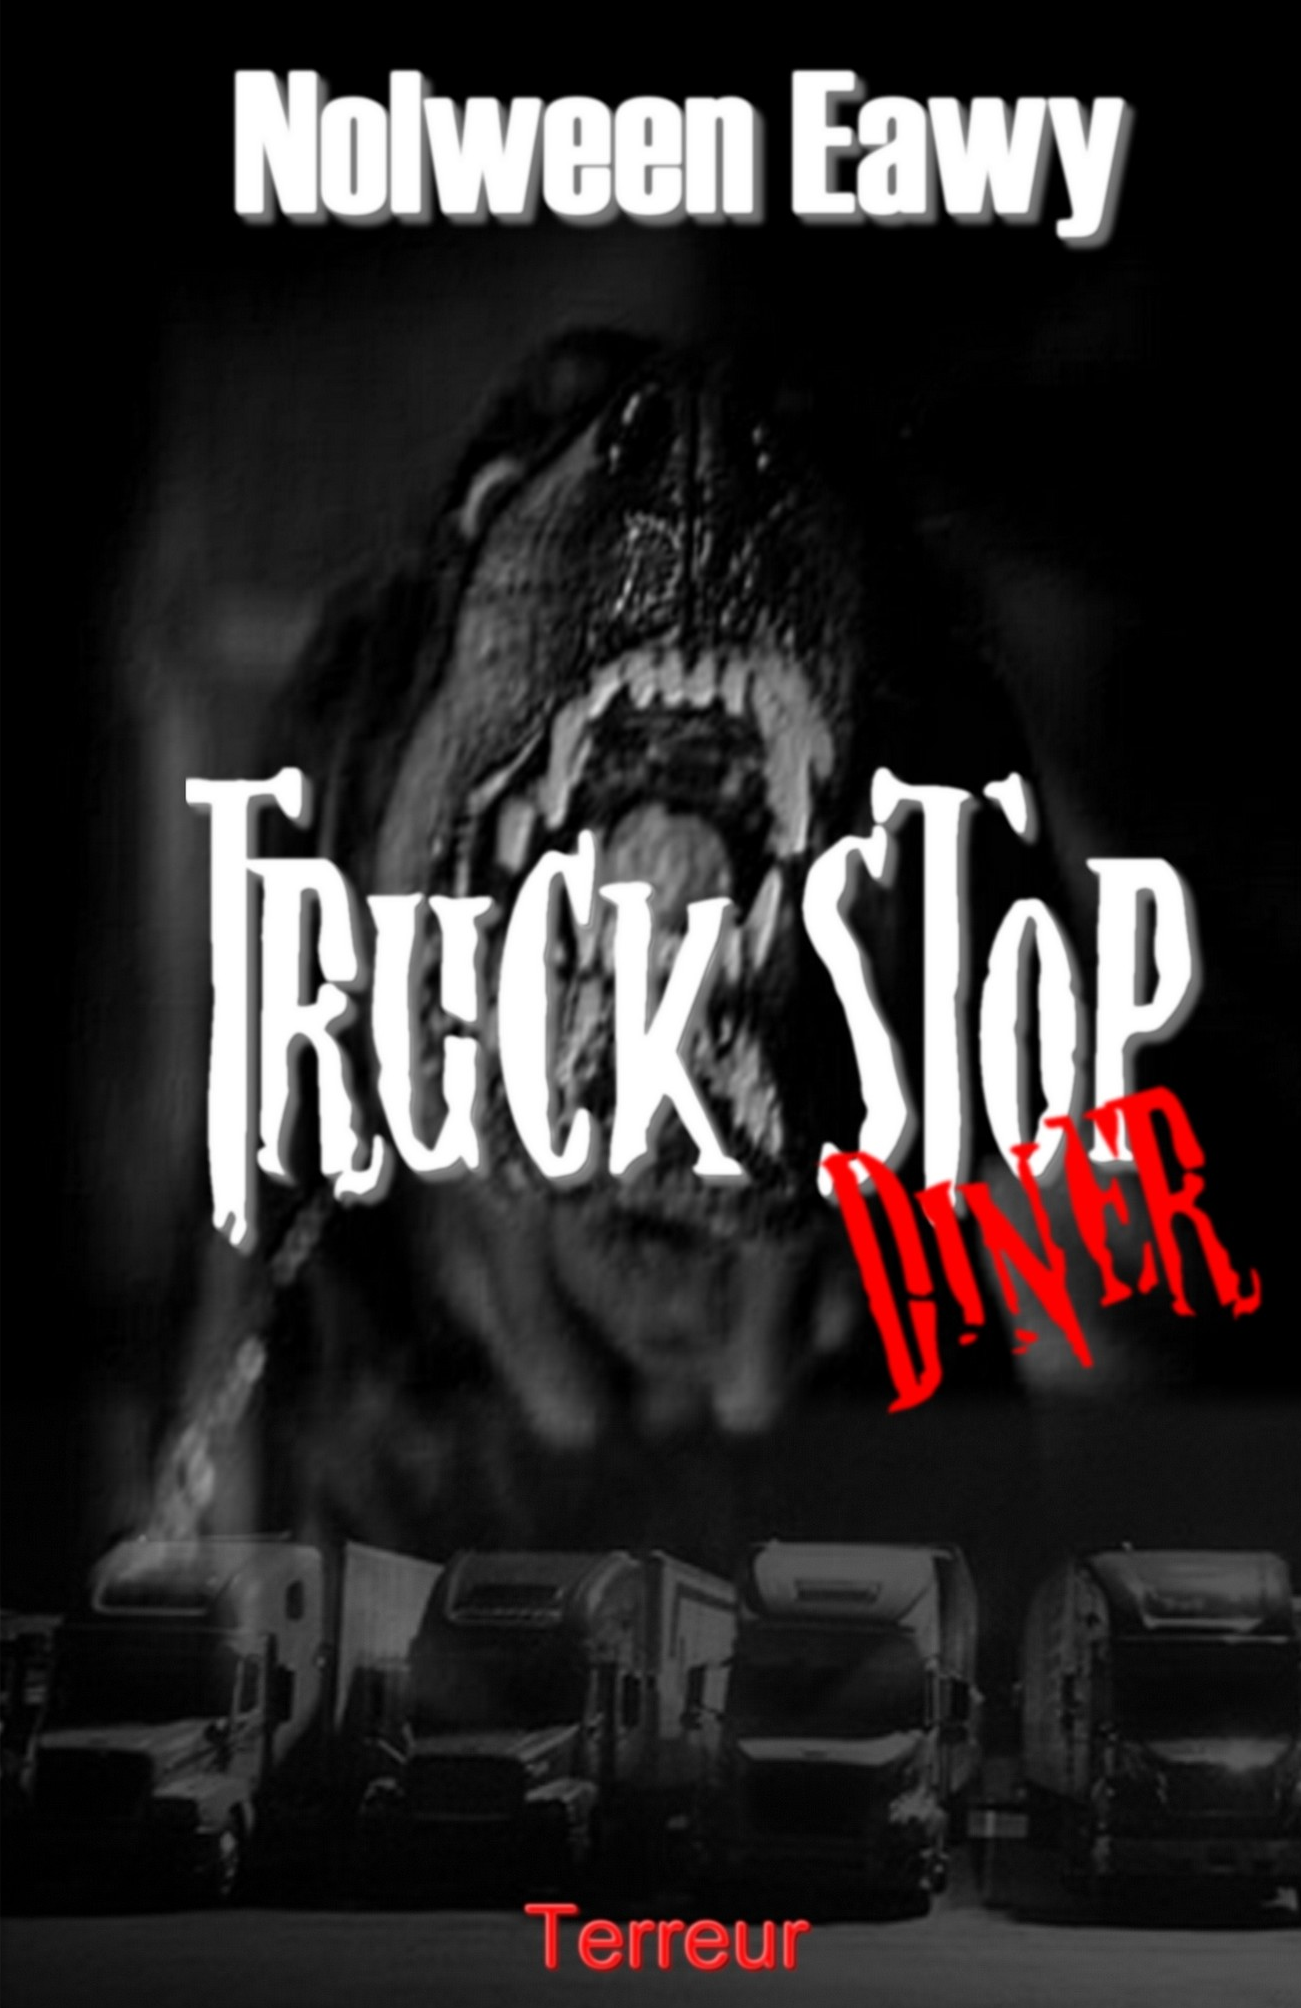 Truck Stop Diner